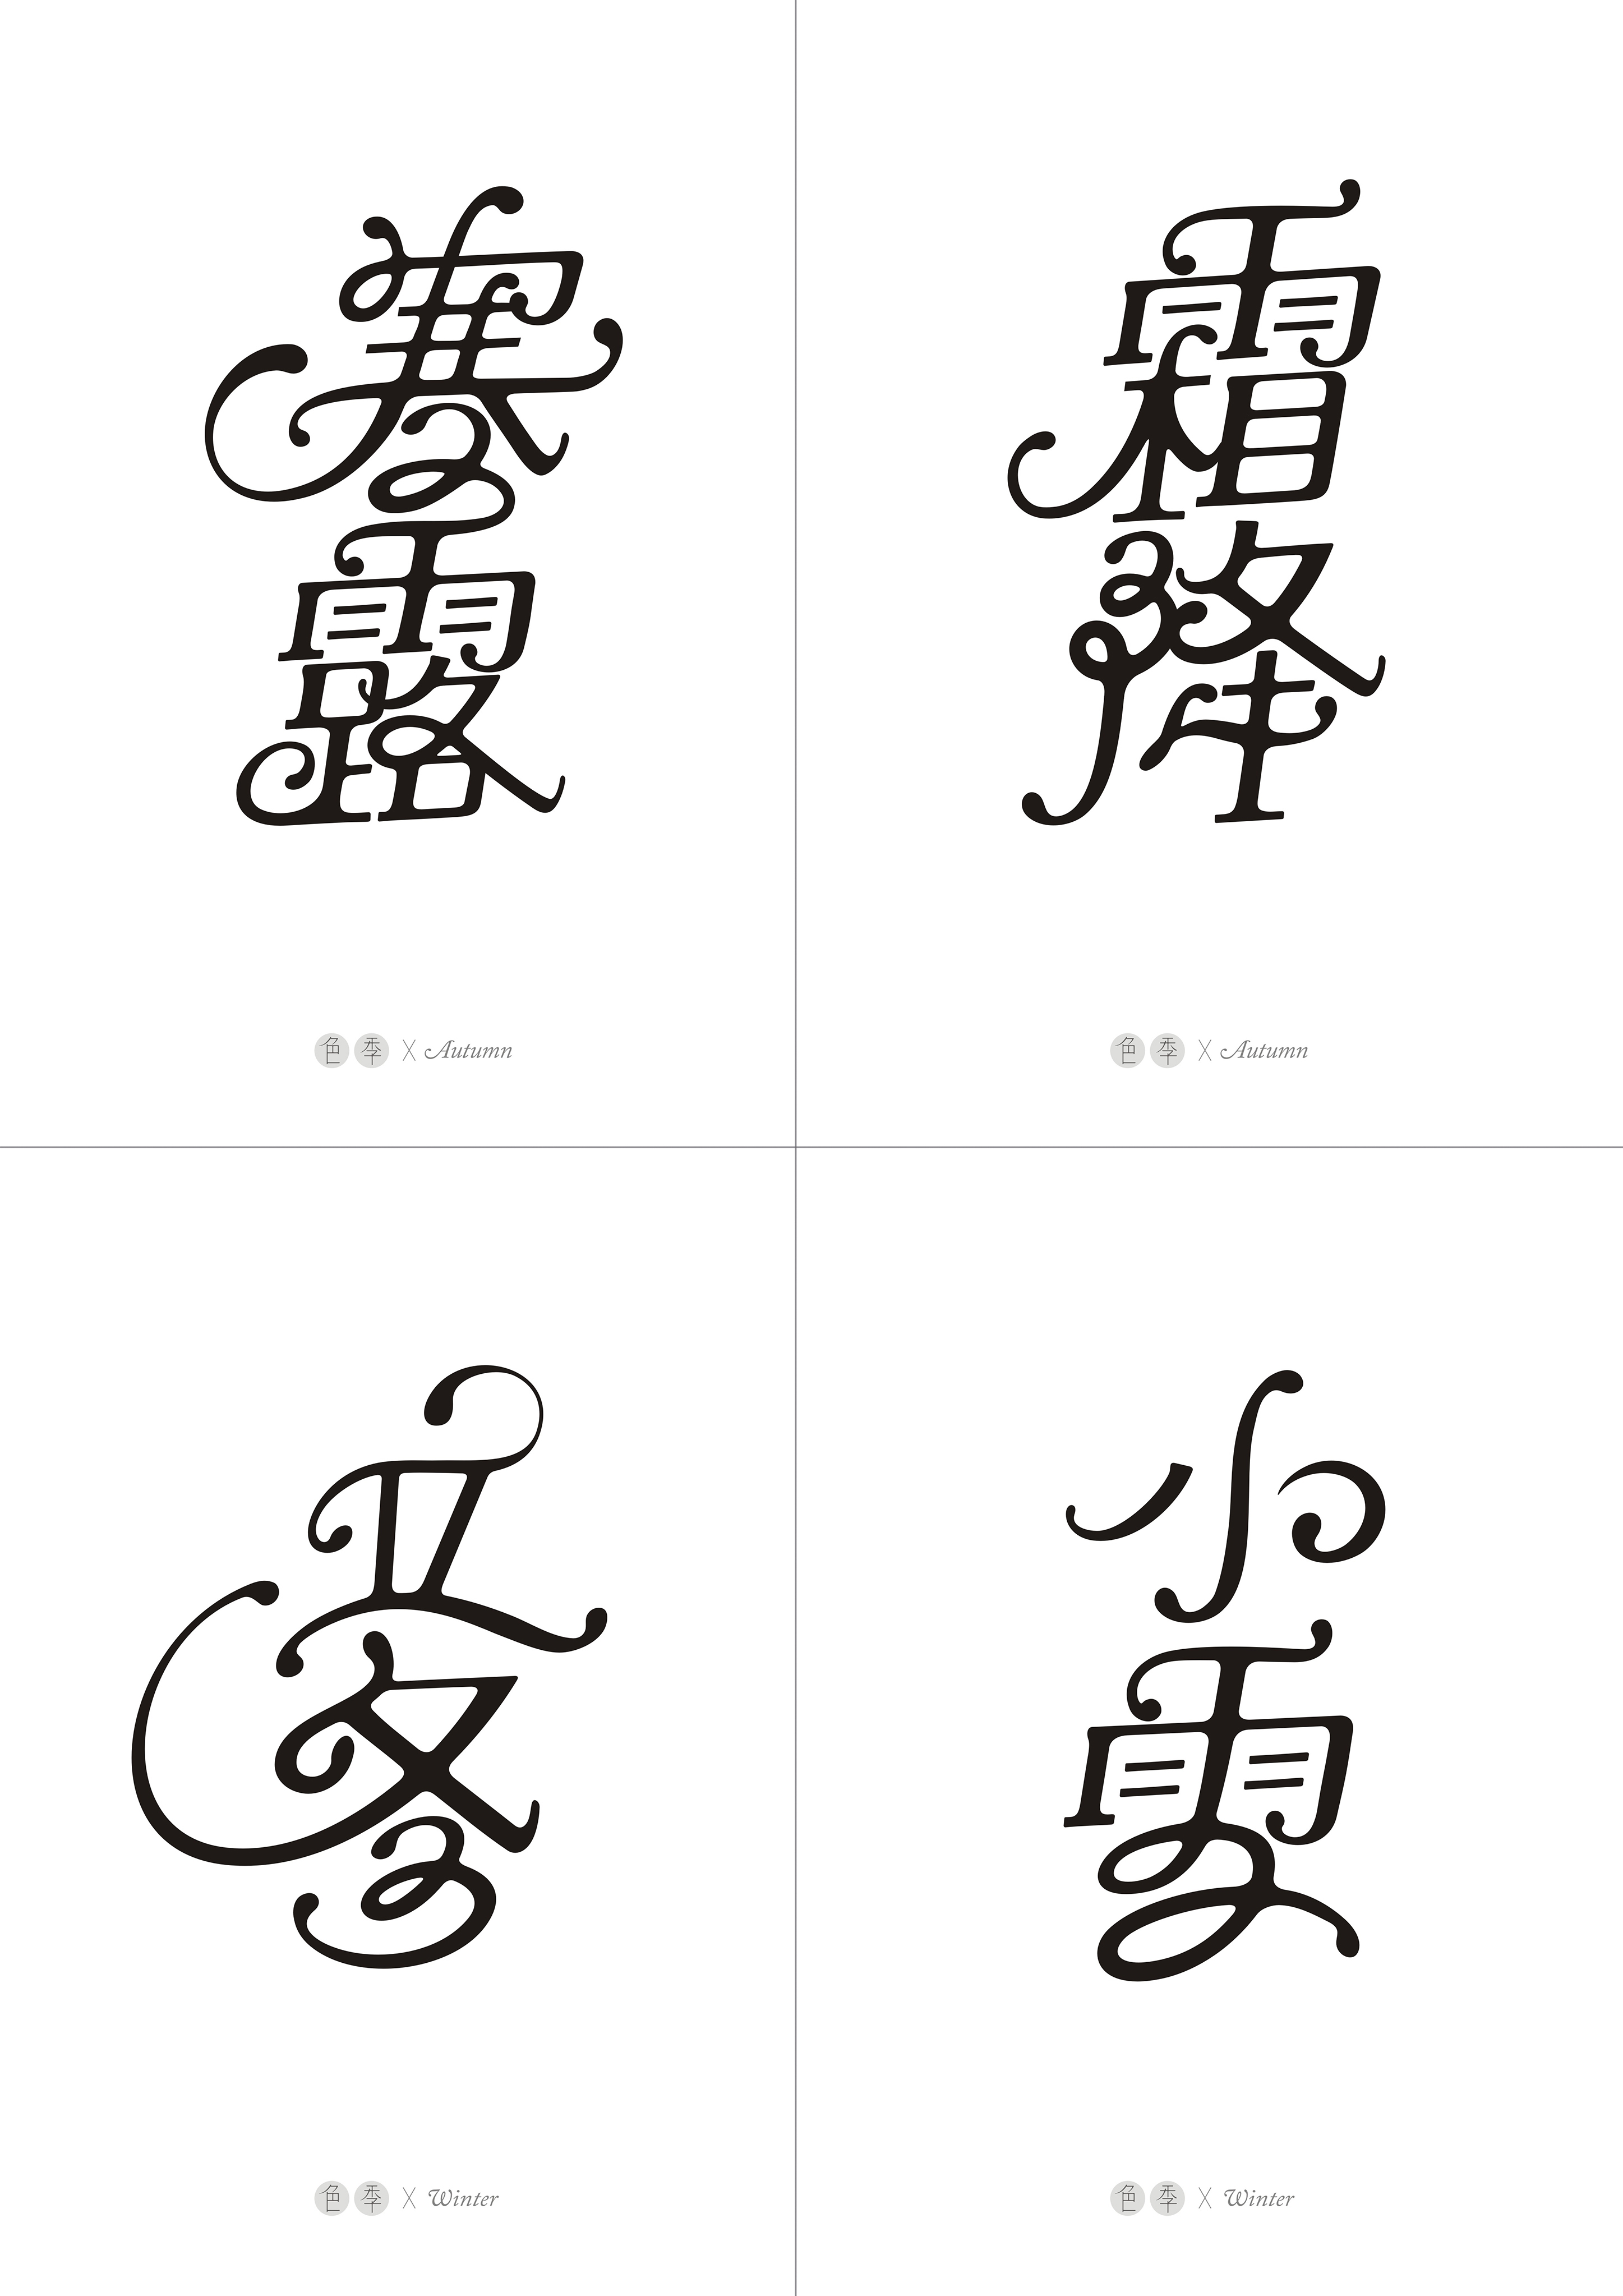 英文花体笔画与汉字结合尝试二十四节气字体设计